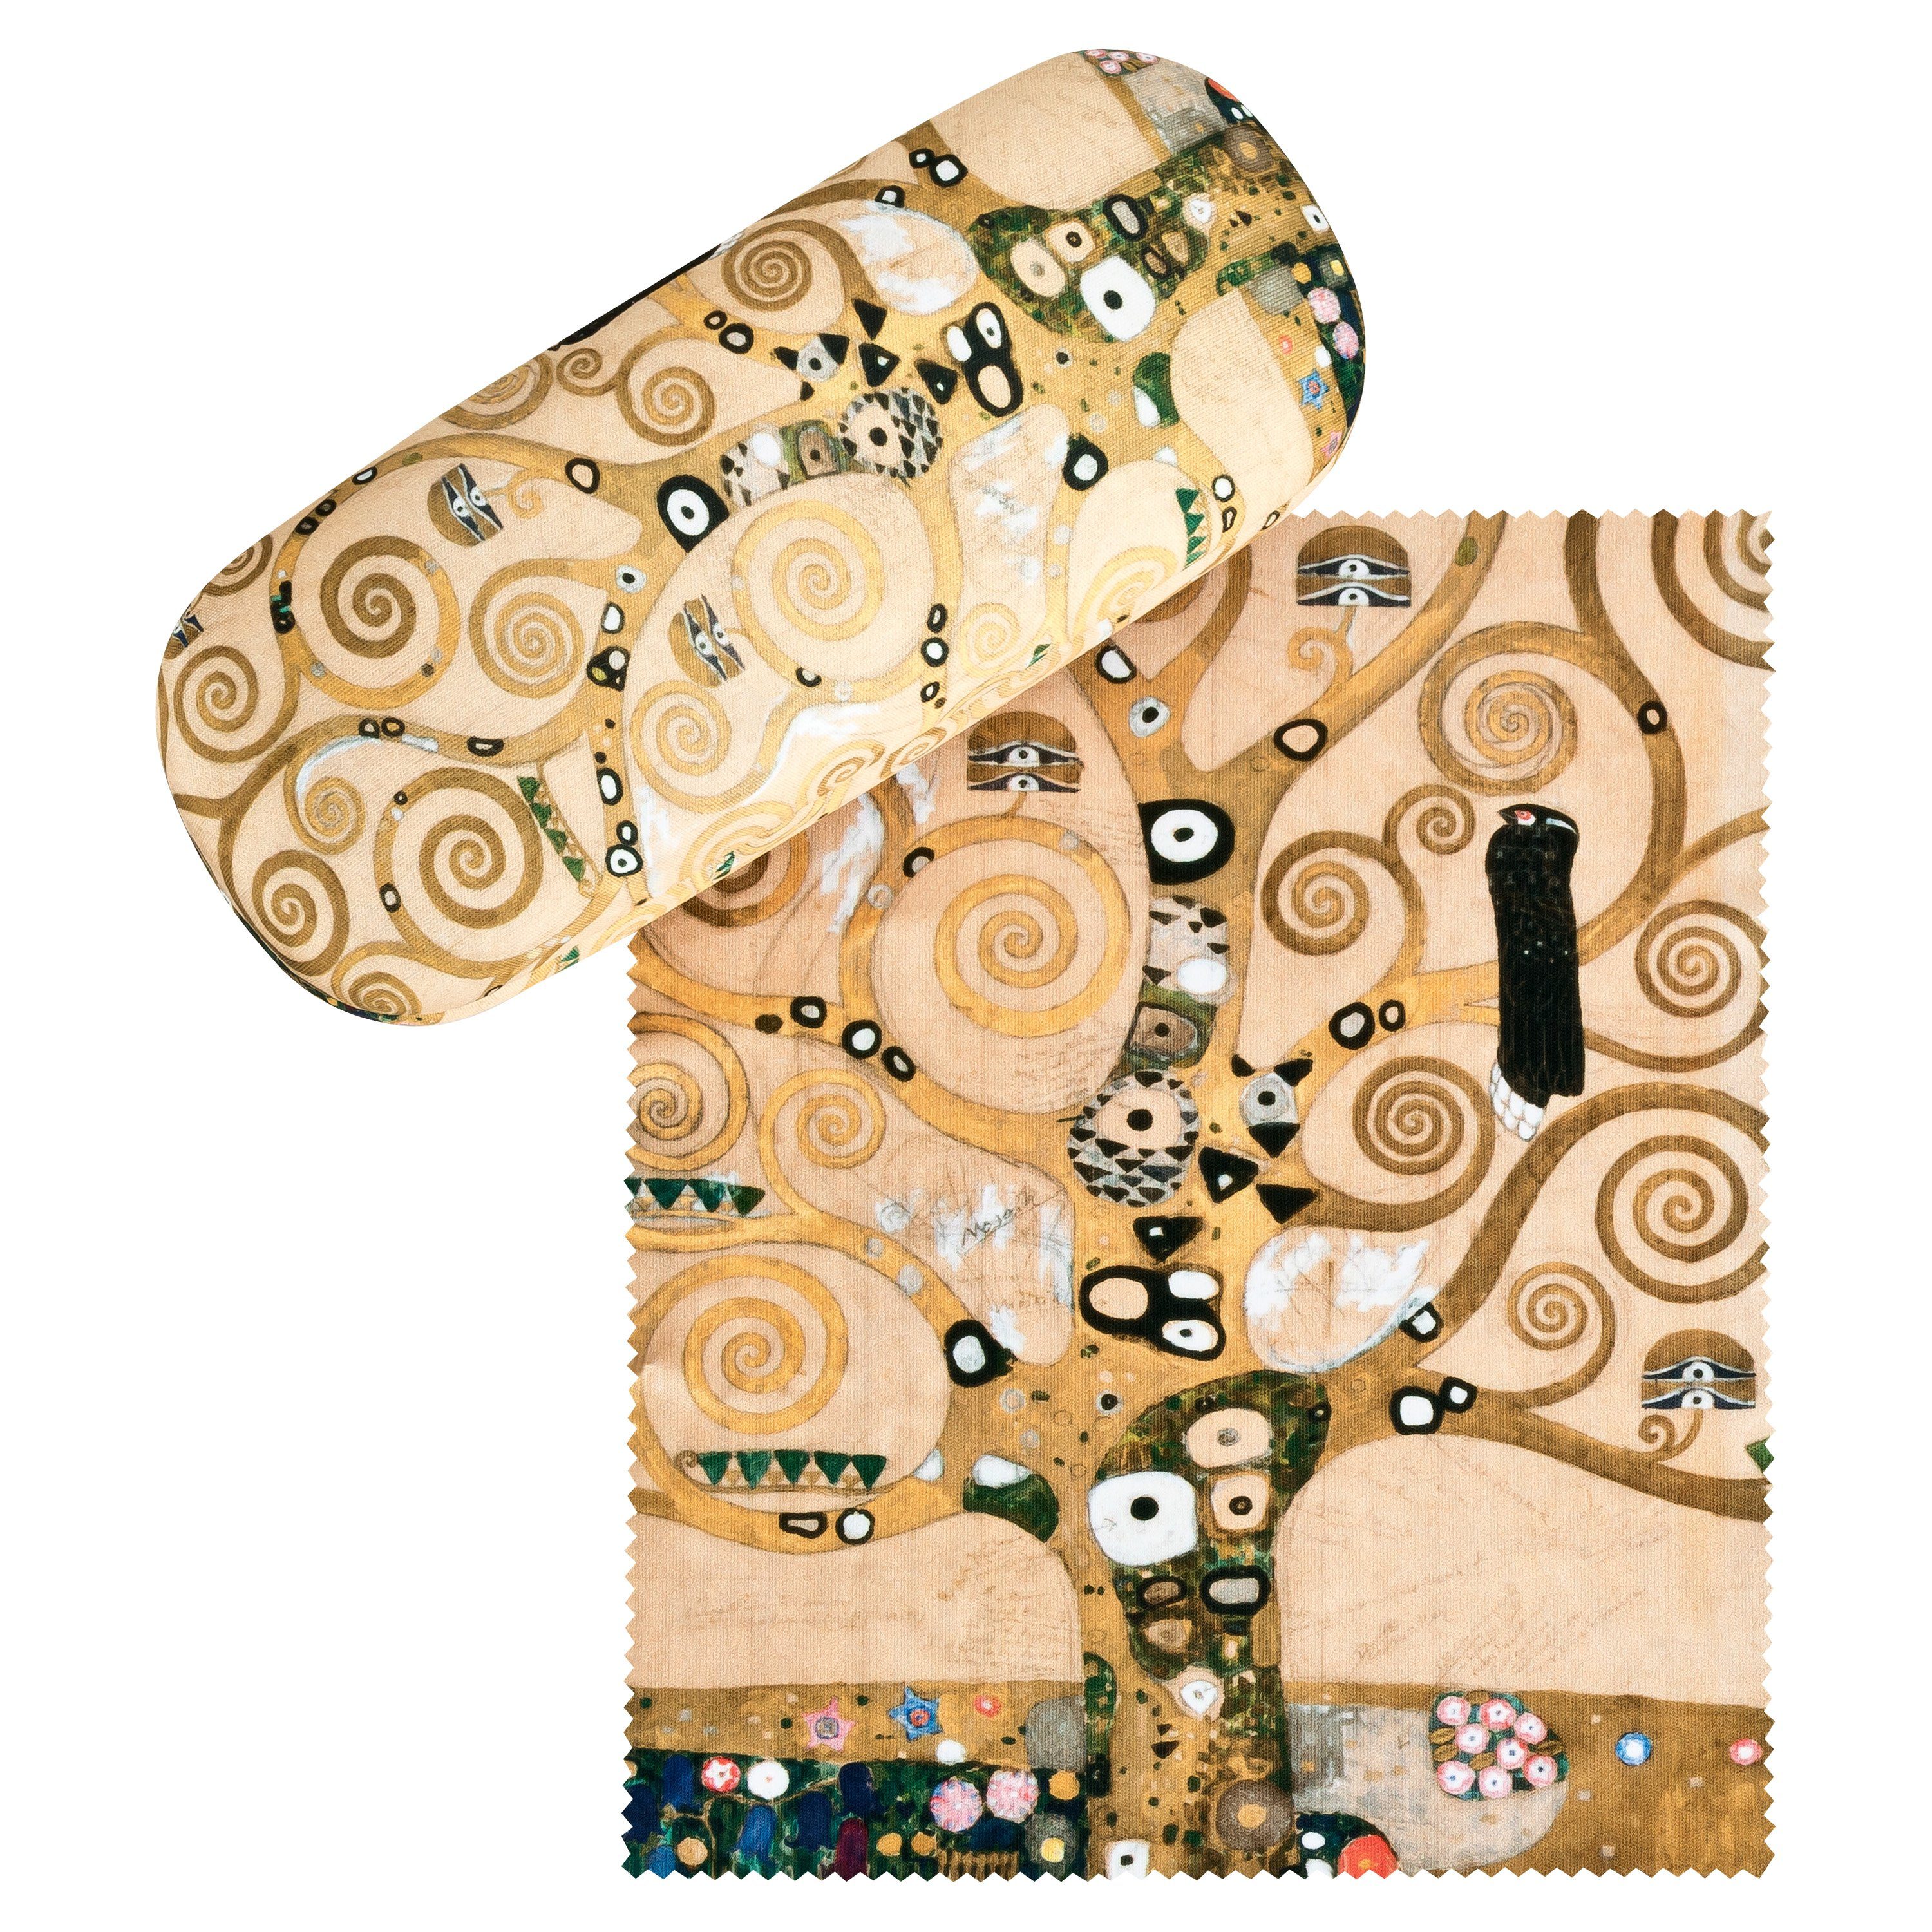 von Lilienfeld Brillenetui Brillenetui Gustav Klimt Lebensbaum Kunst Brillenbox, stabiles mit Mikrofaser bezogenes Hardcase